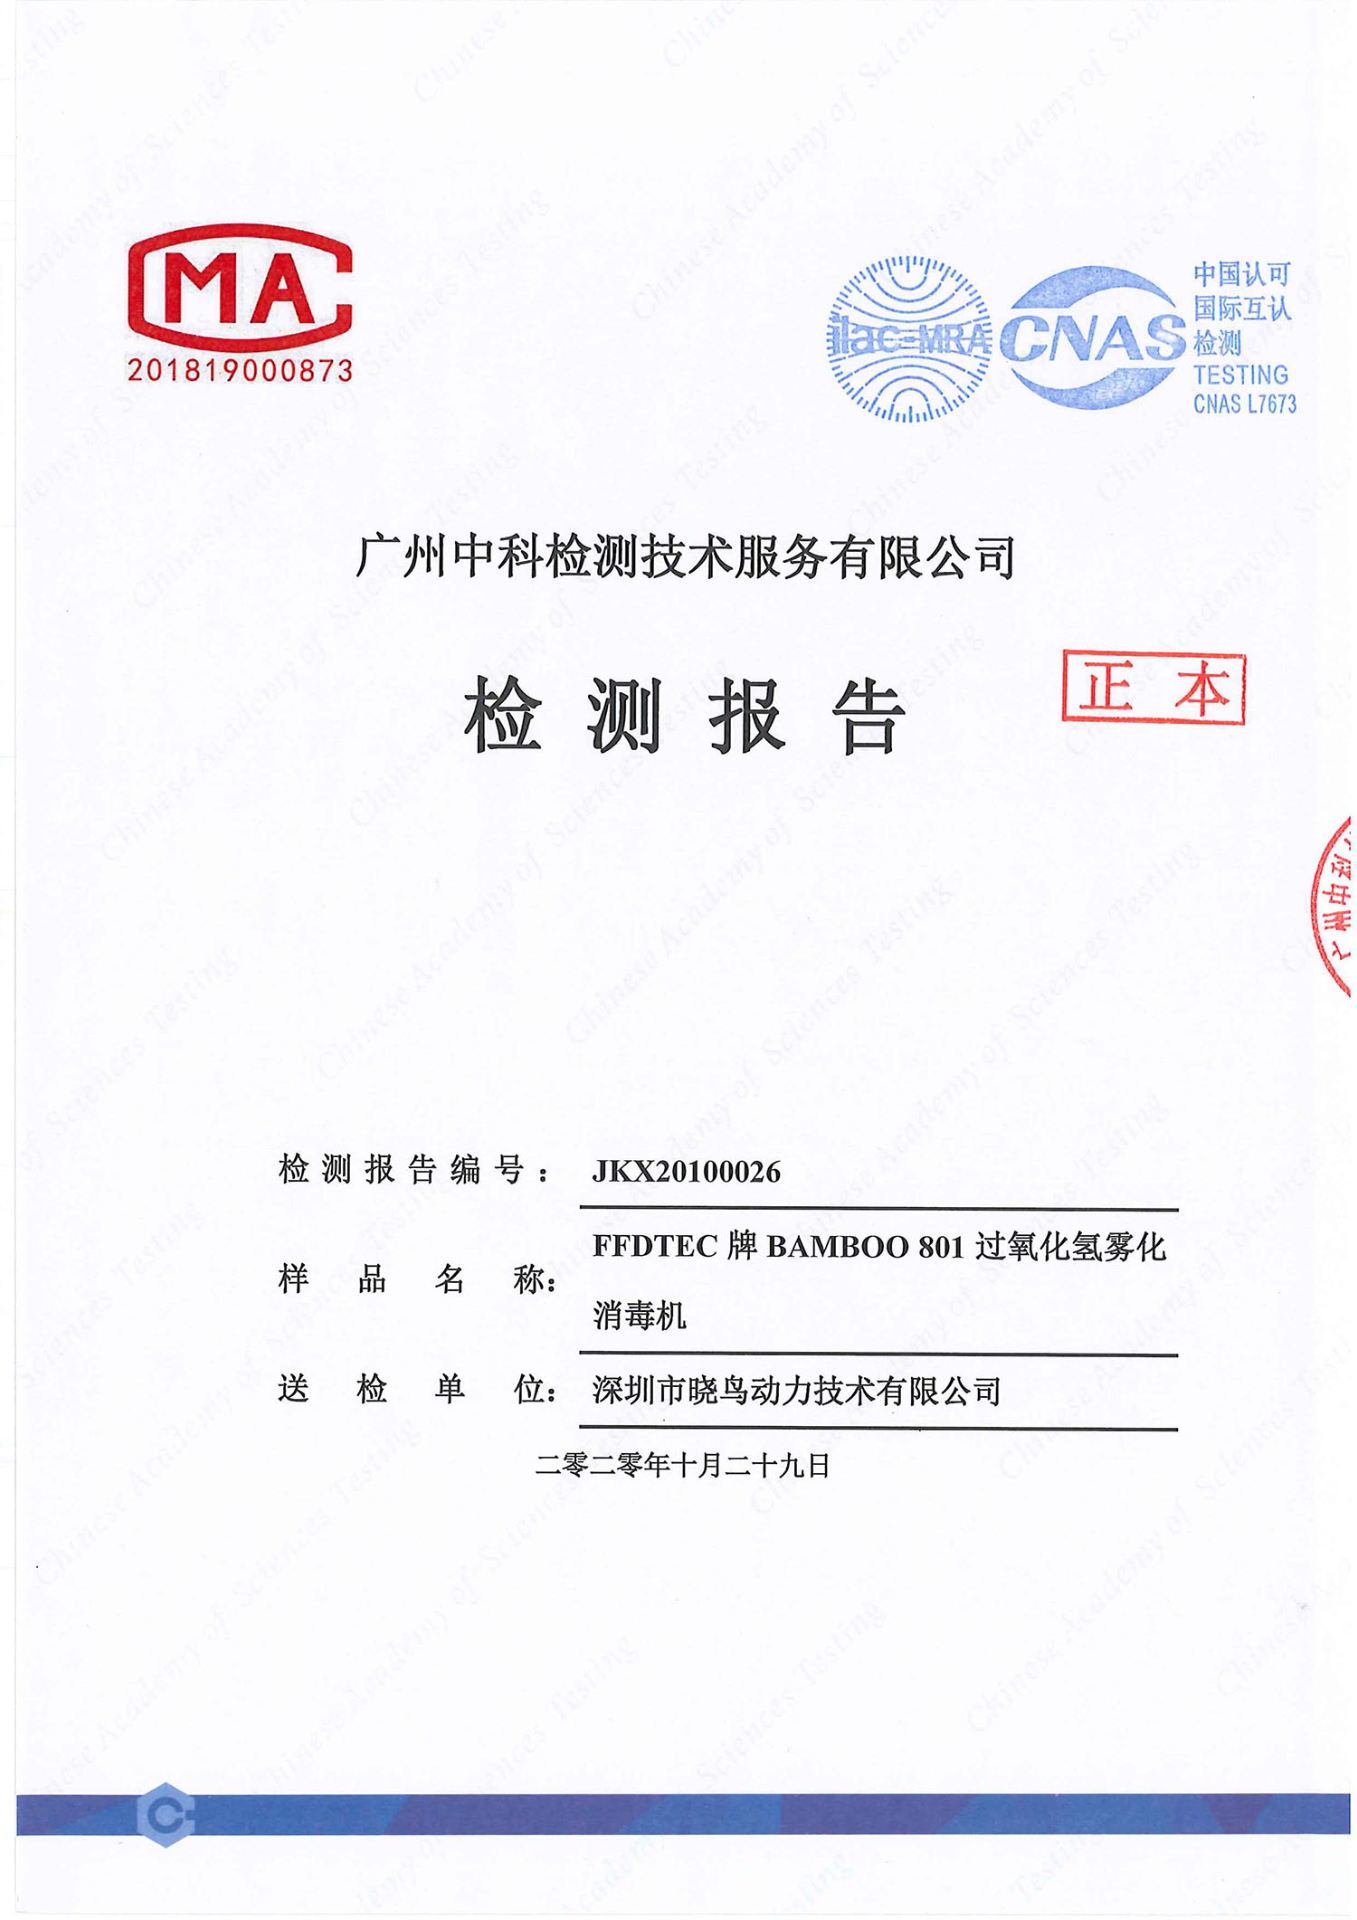 過氧化氫滅菌器2.7克每立方米LOG6實驗報告中文